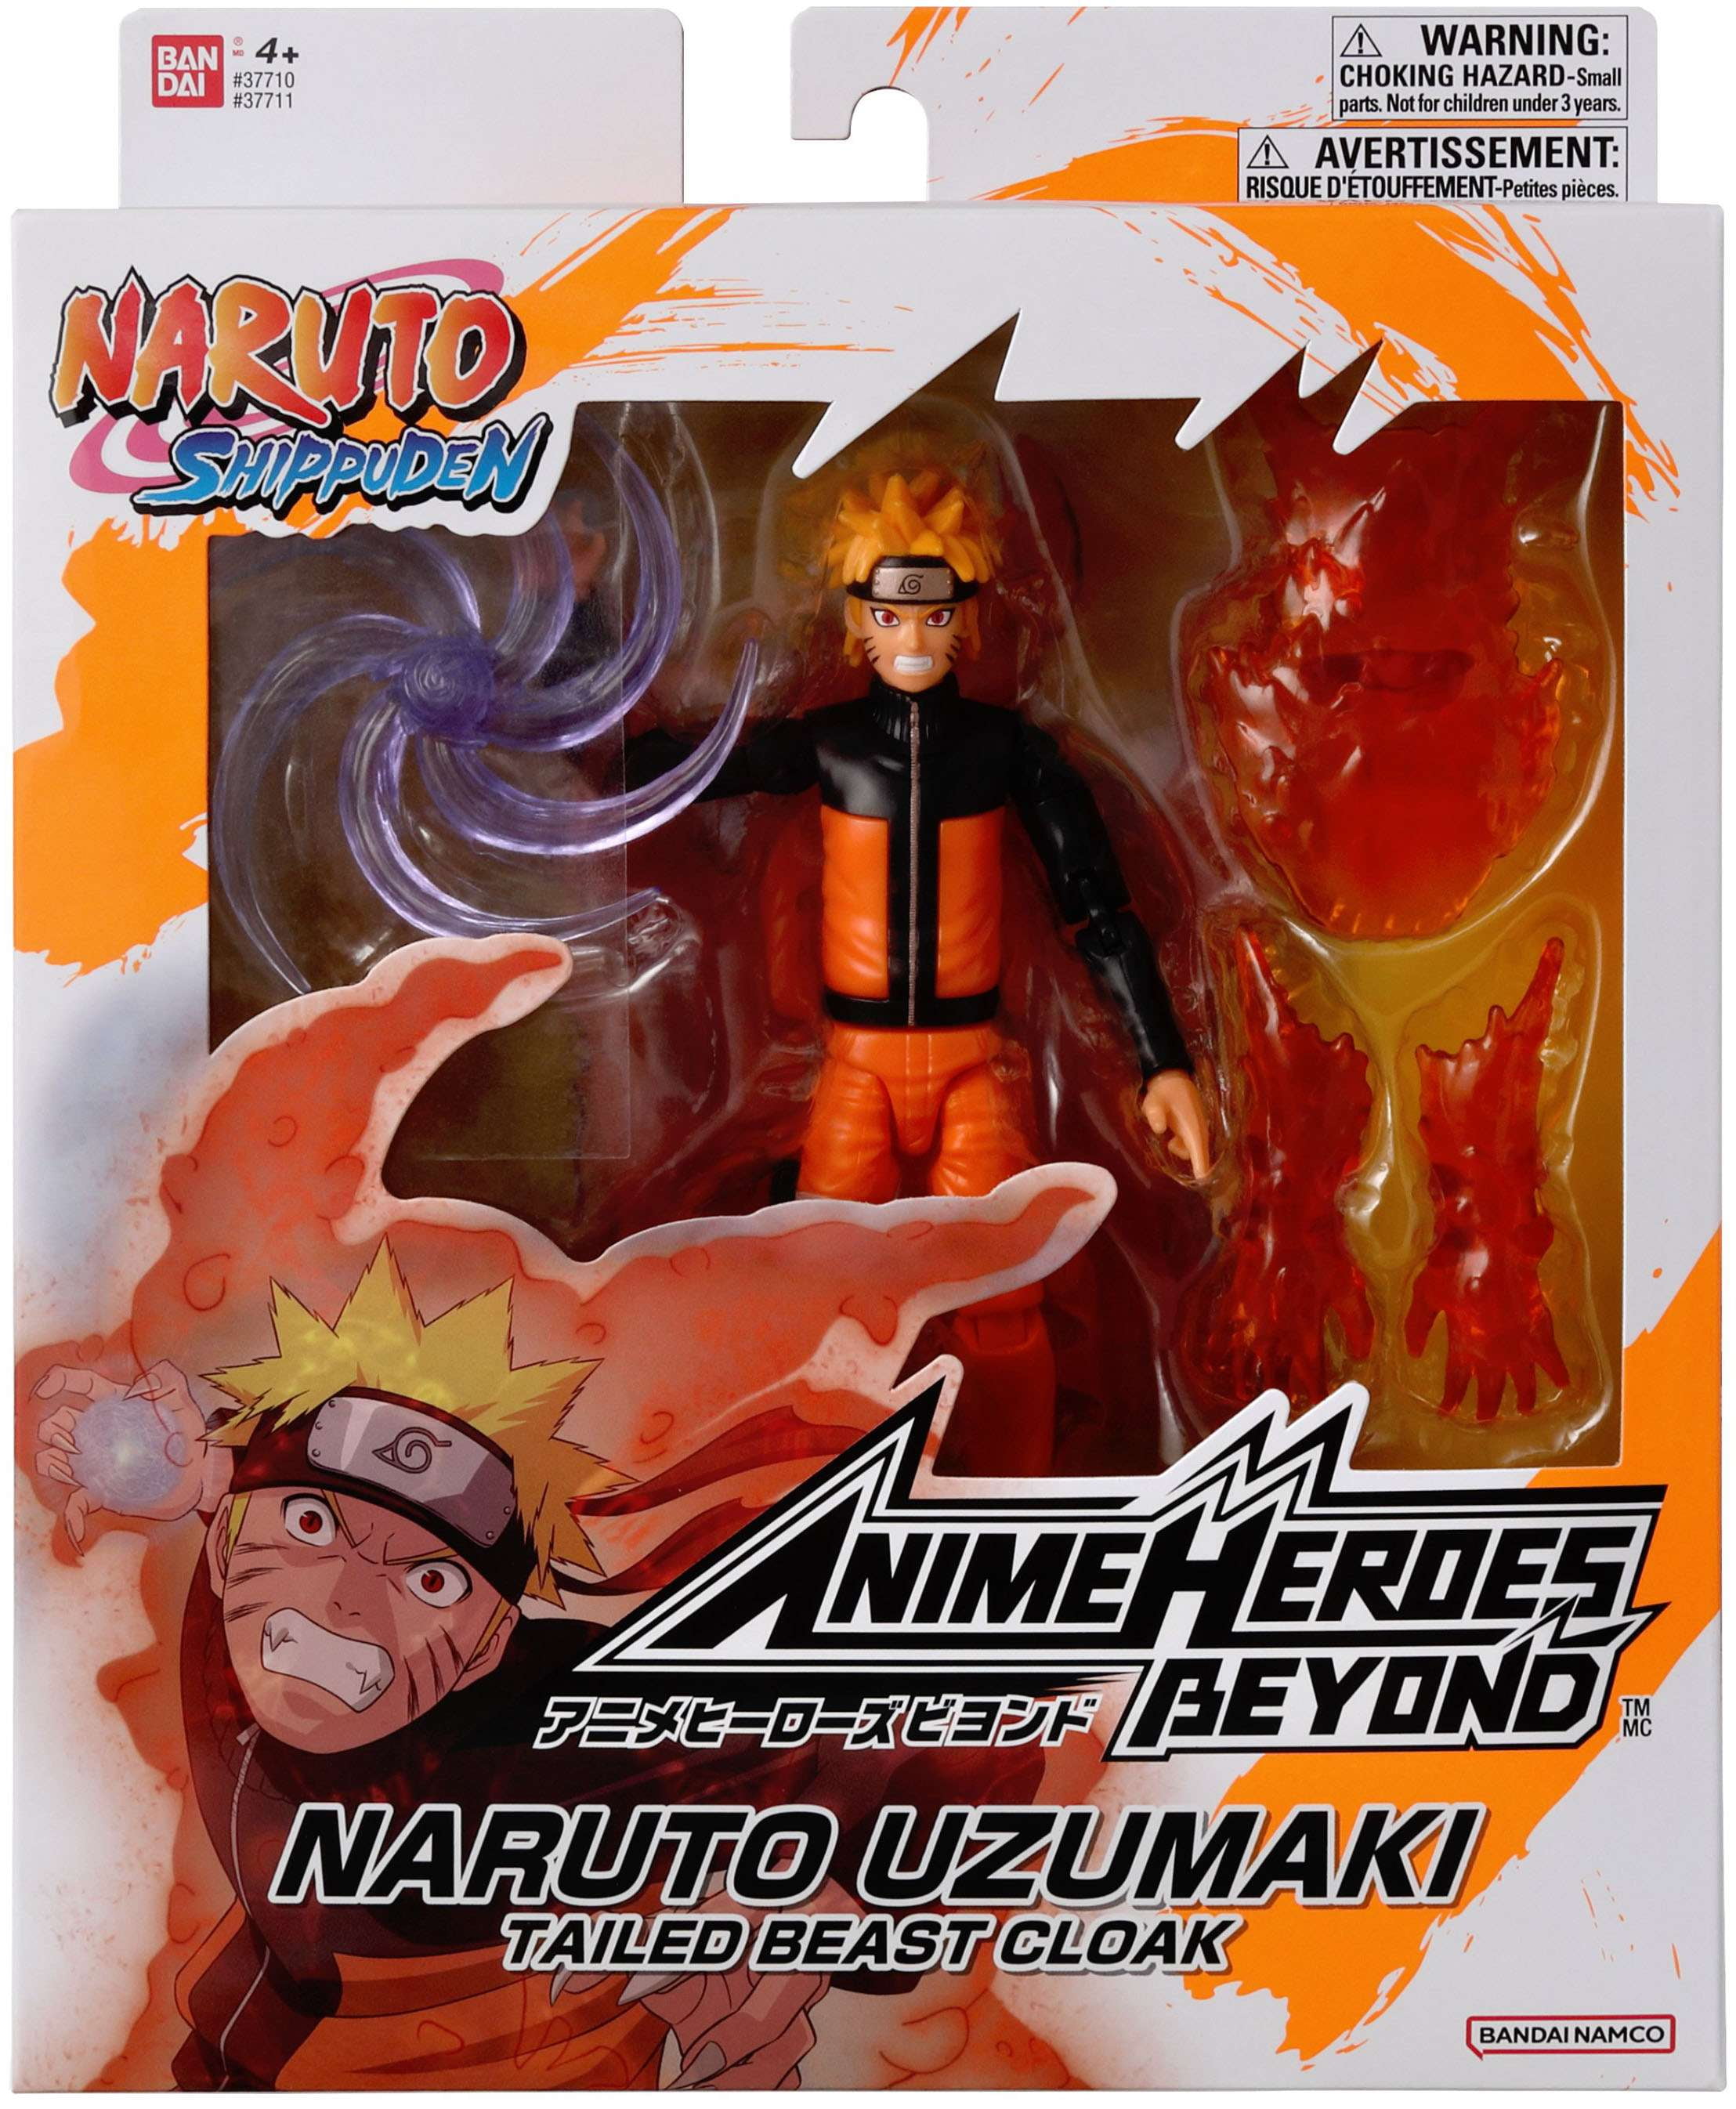 Anime Heroes Beyond Naruto Uzamaki Action Figure